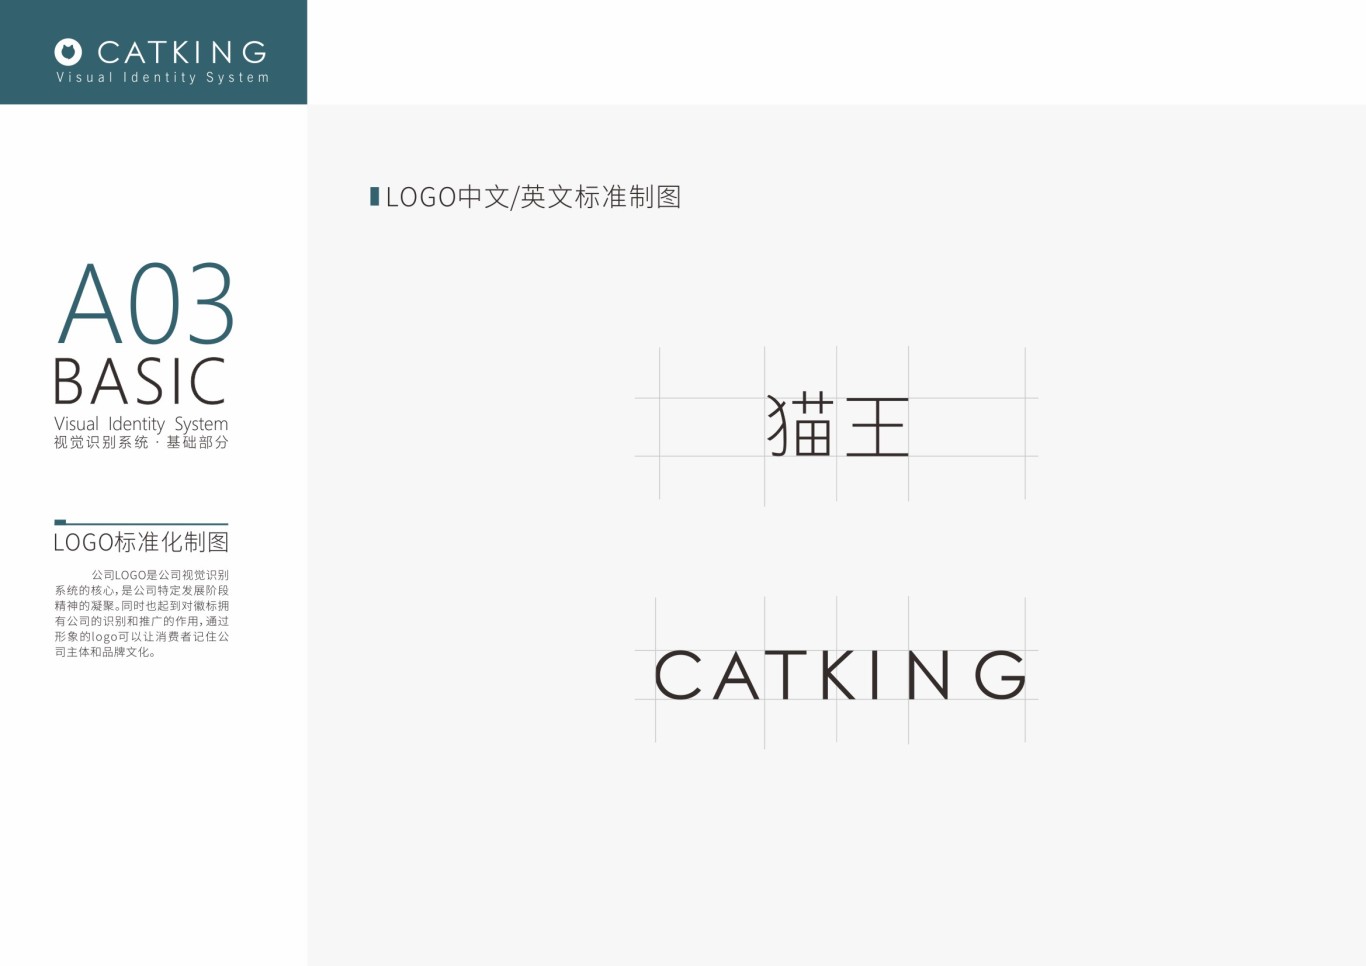 猫王/CATKING 视觉识别系统升级&包装升级图3